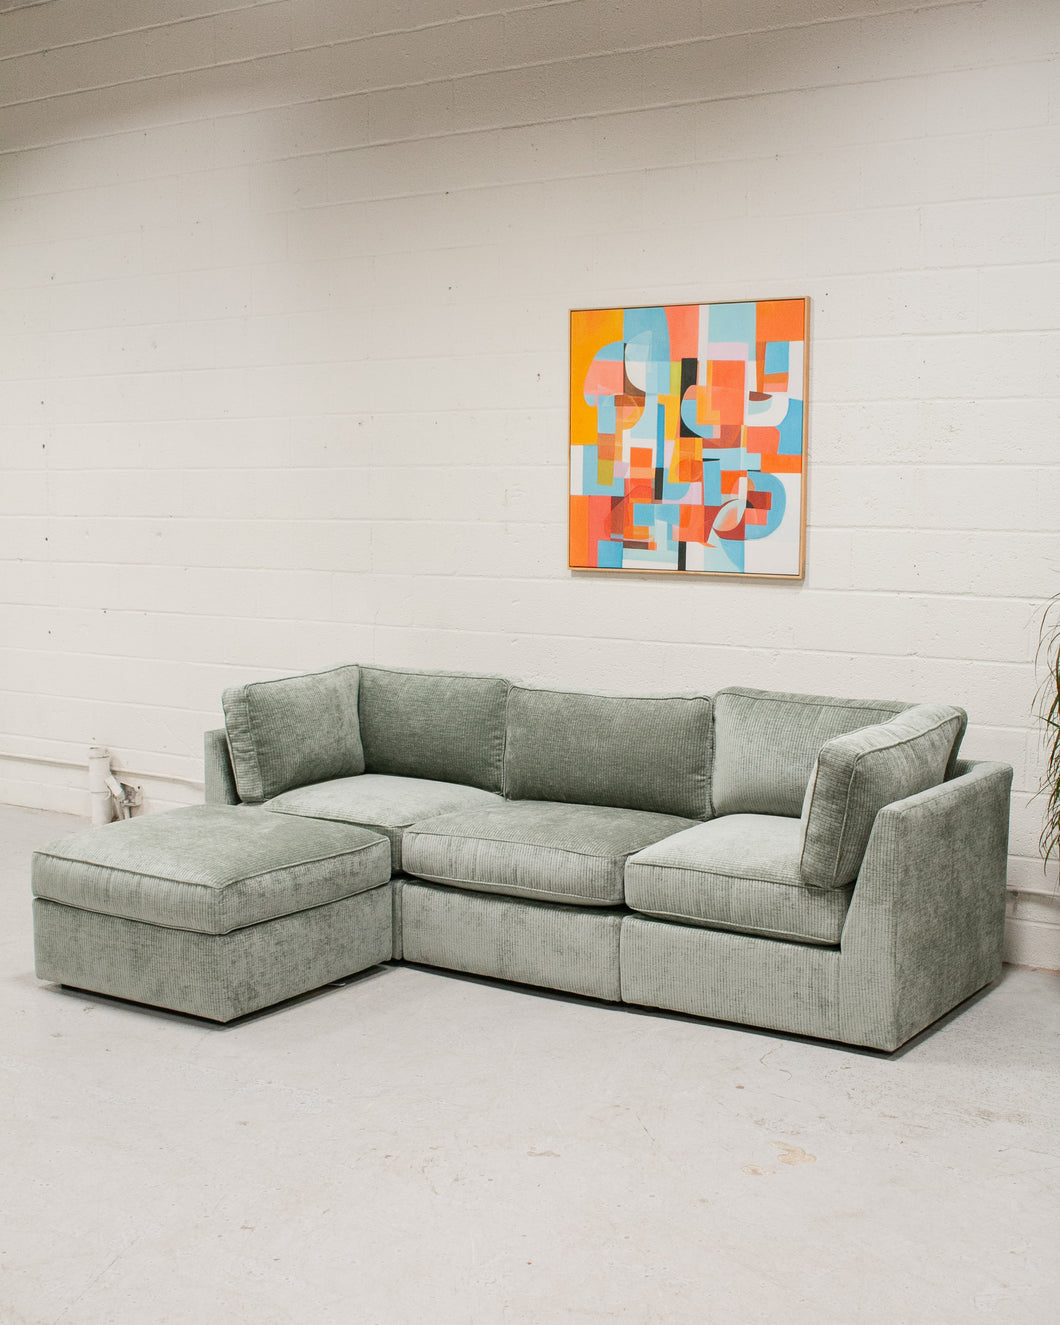 Barney Modular Sofa in Belmont Jade 4 Piece